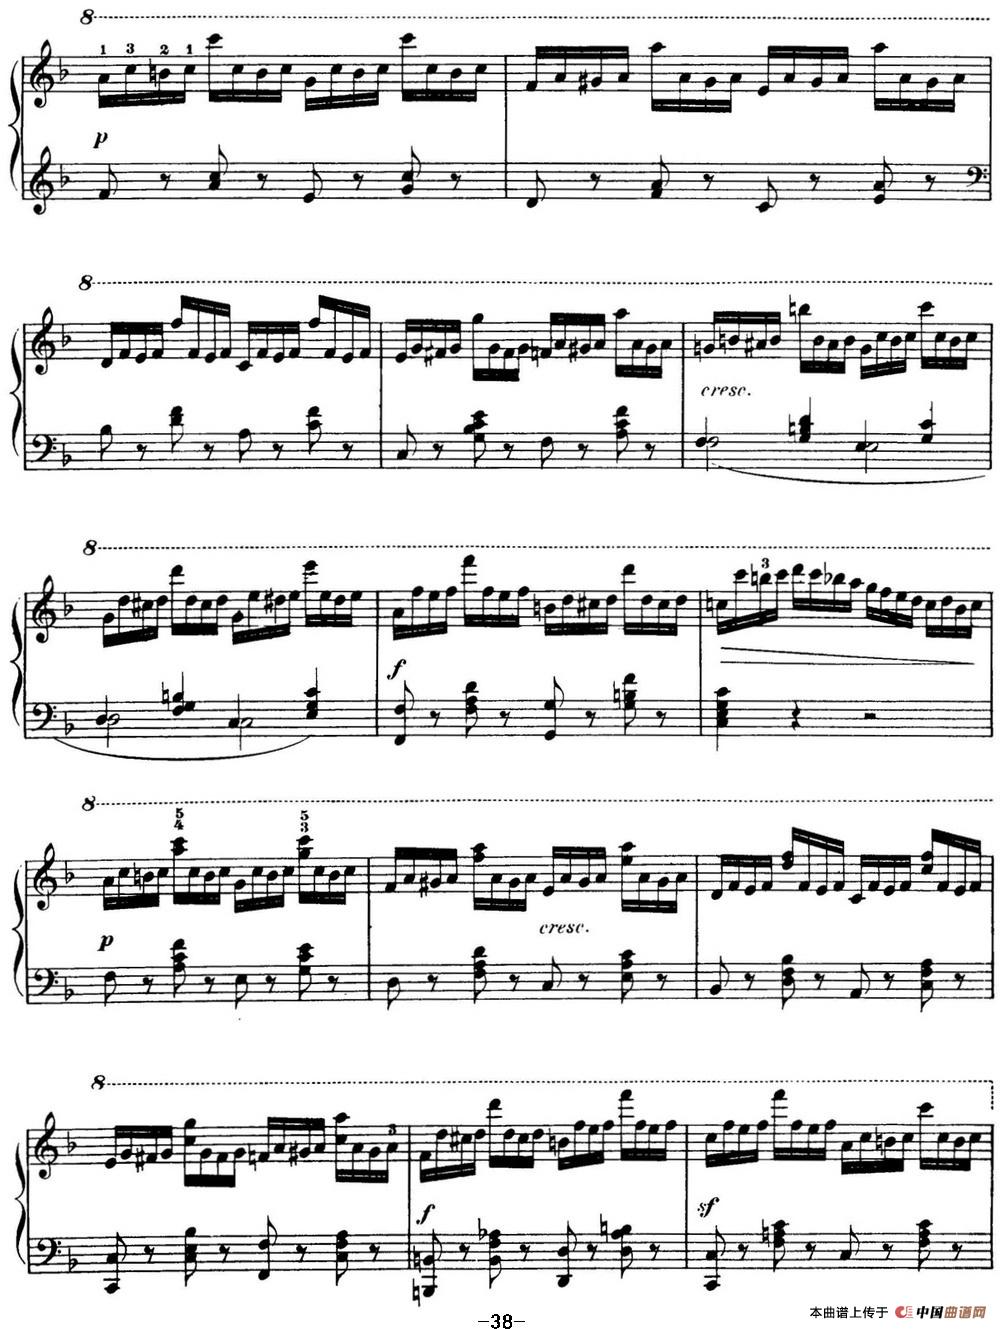 50首车尔尼Op.740钢琴手指灵巧技术练习曲（NO.11）(1)_C740_页面_038.jpg